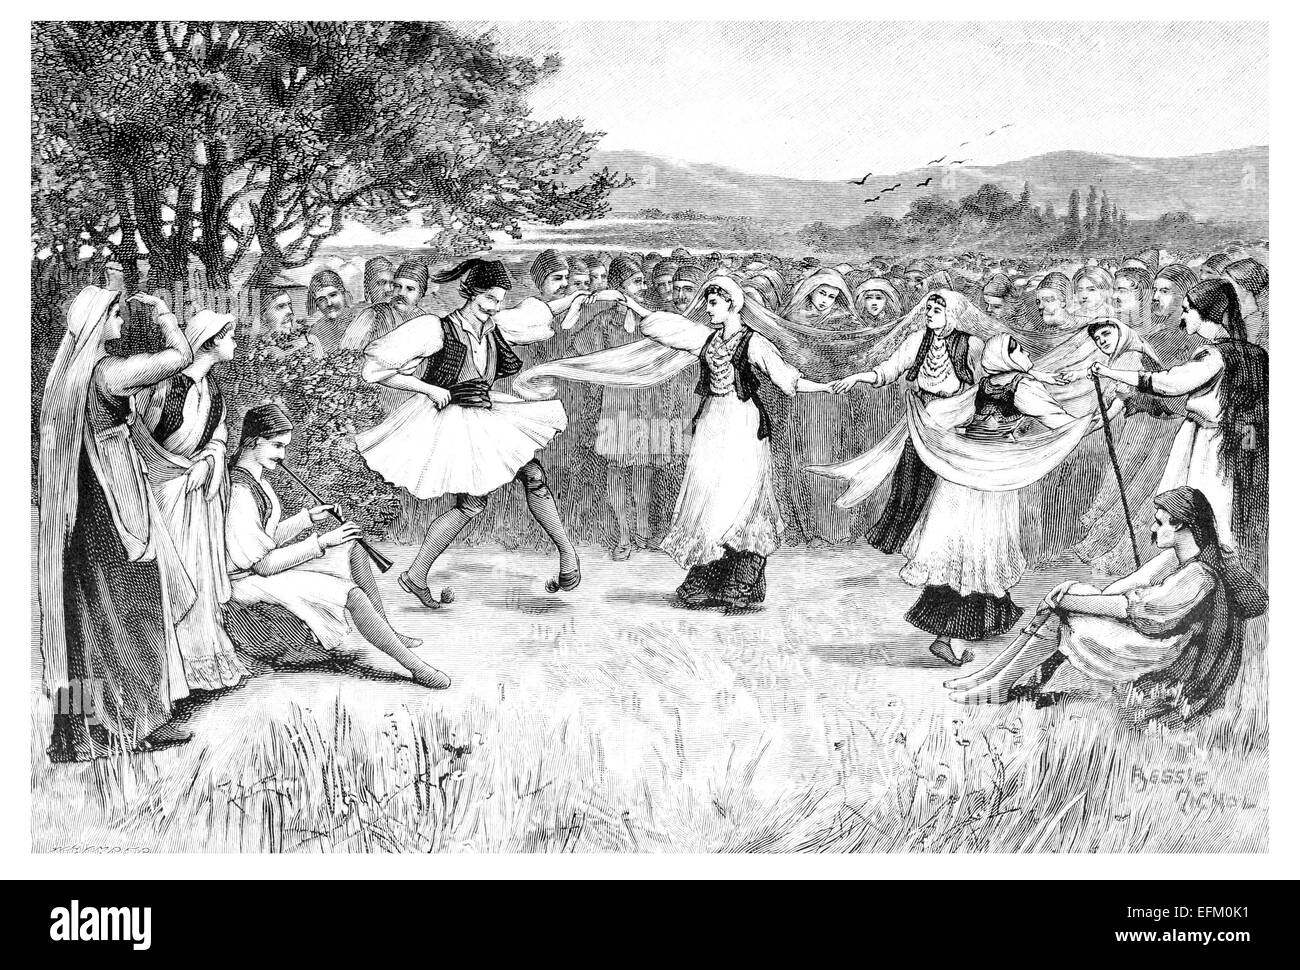 Incisione in stile vittoriano tradizionale di ballerini greci. Restaurata digitalmente immagine da una metà del XIX secolo enciclopedia. Foto Stock